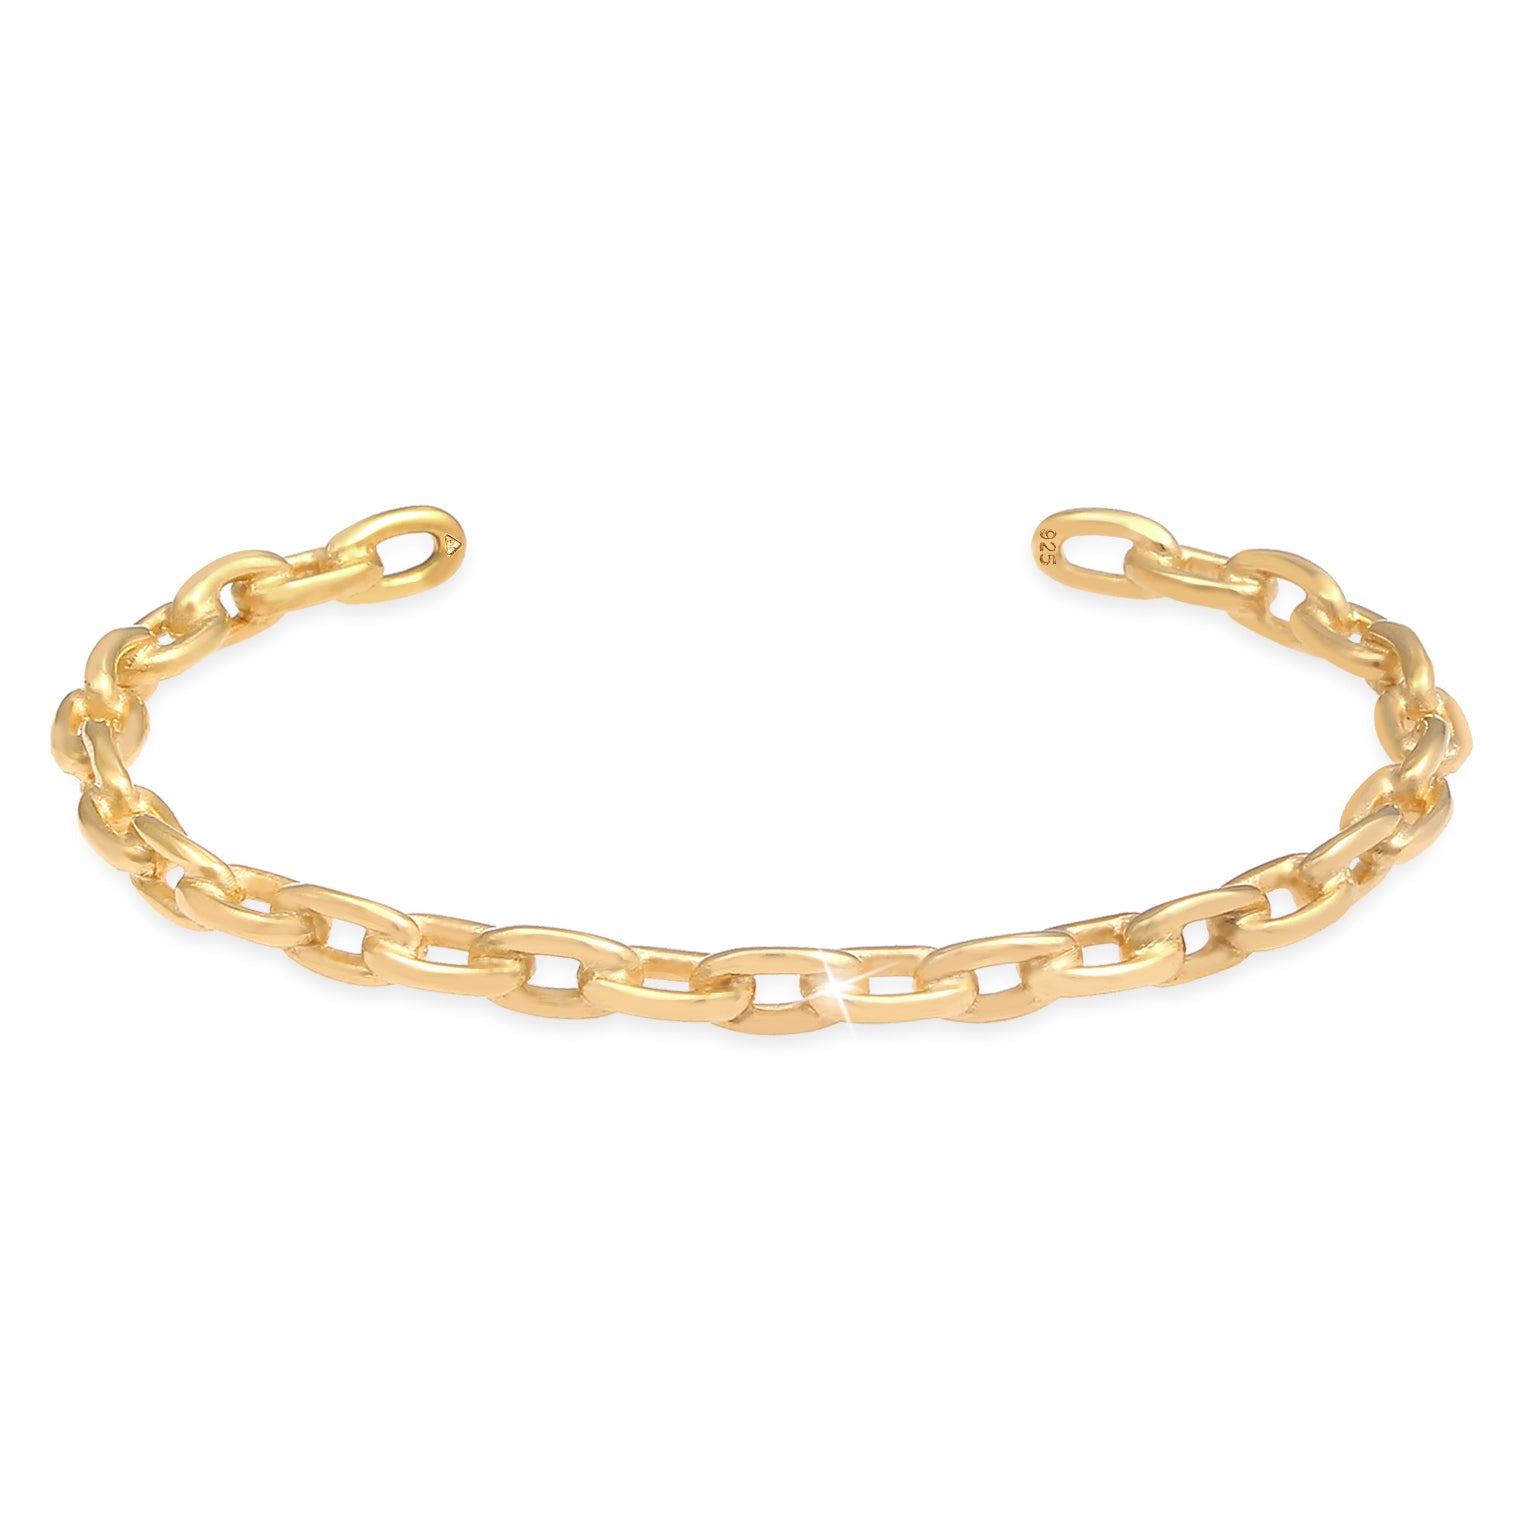 Armbänder im Online-Shop von Elli kaufen – Seite 4 – Elli Jewelry